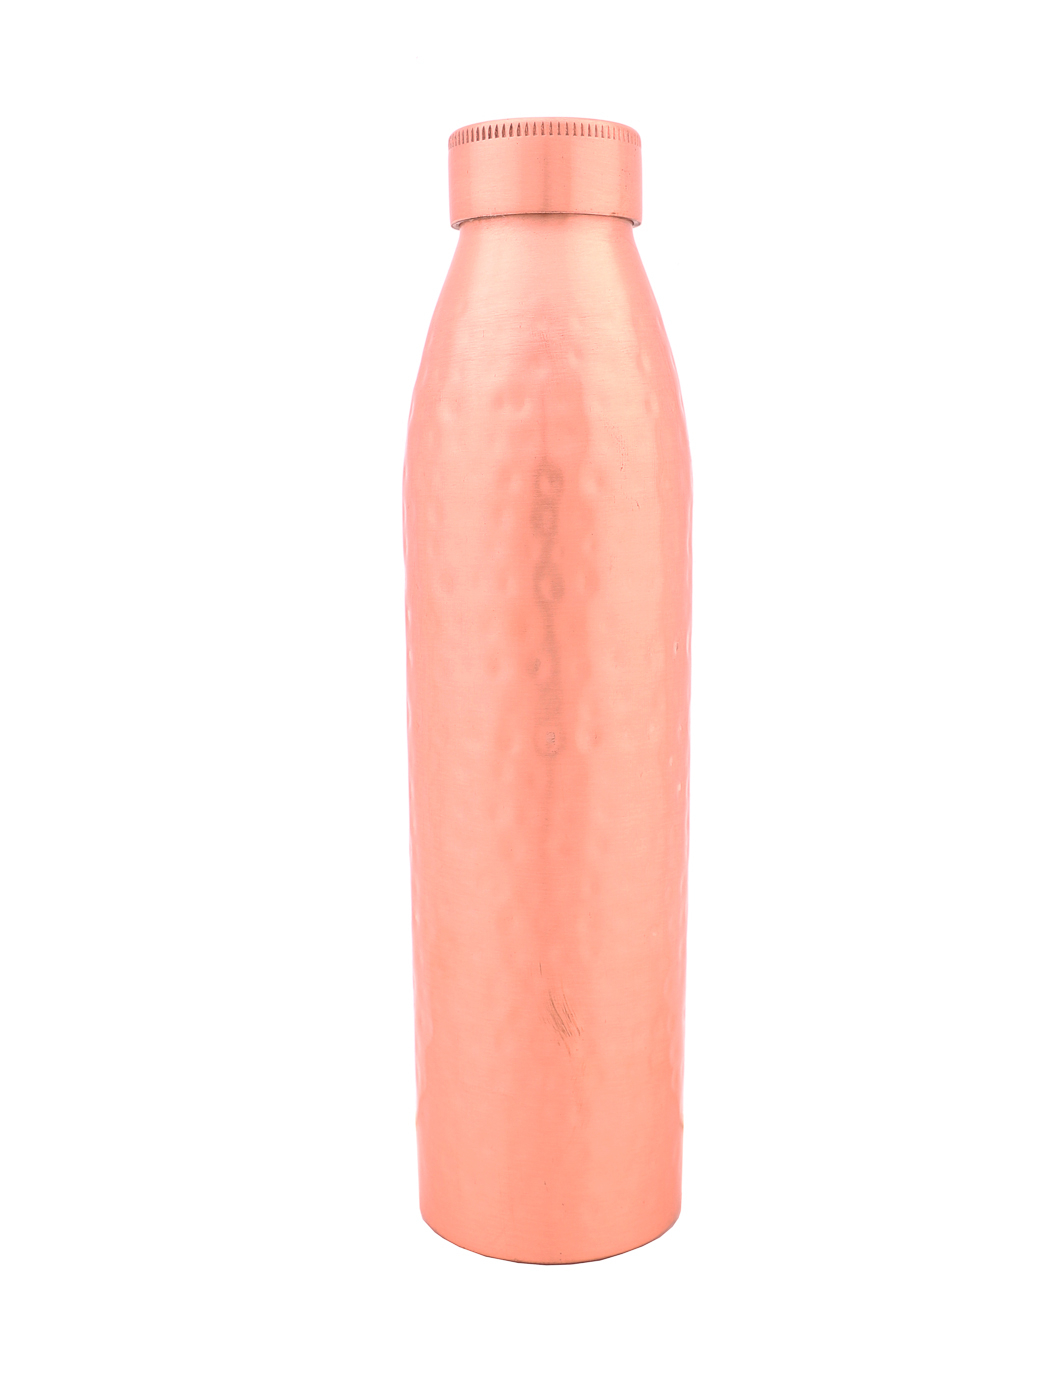 Бутылка Annora (7х28 см), размер 7х28 см